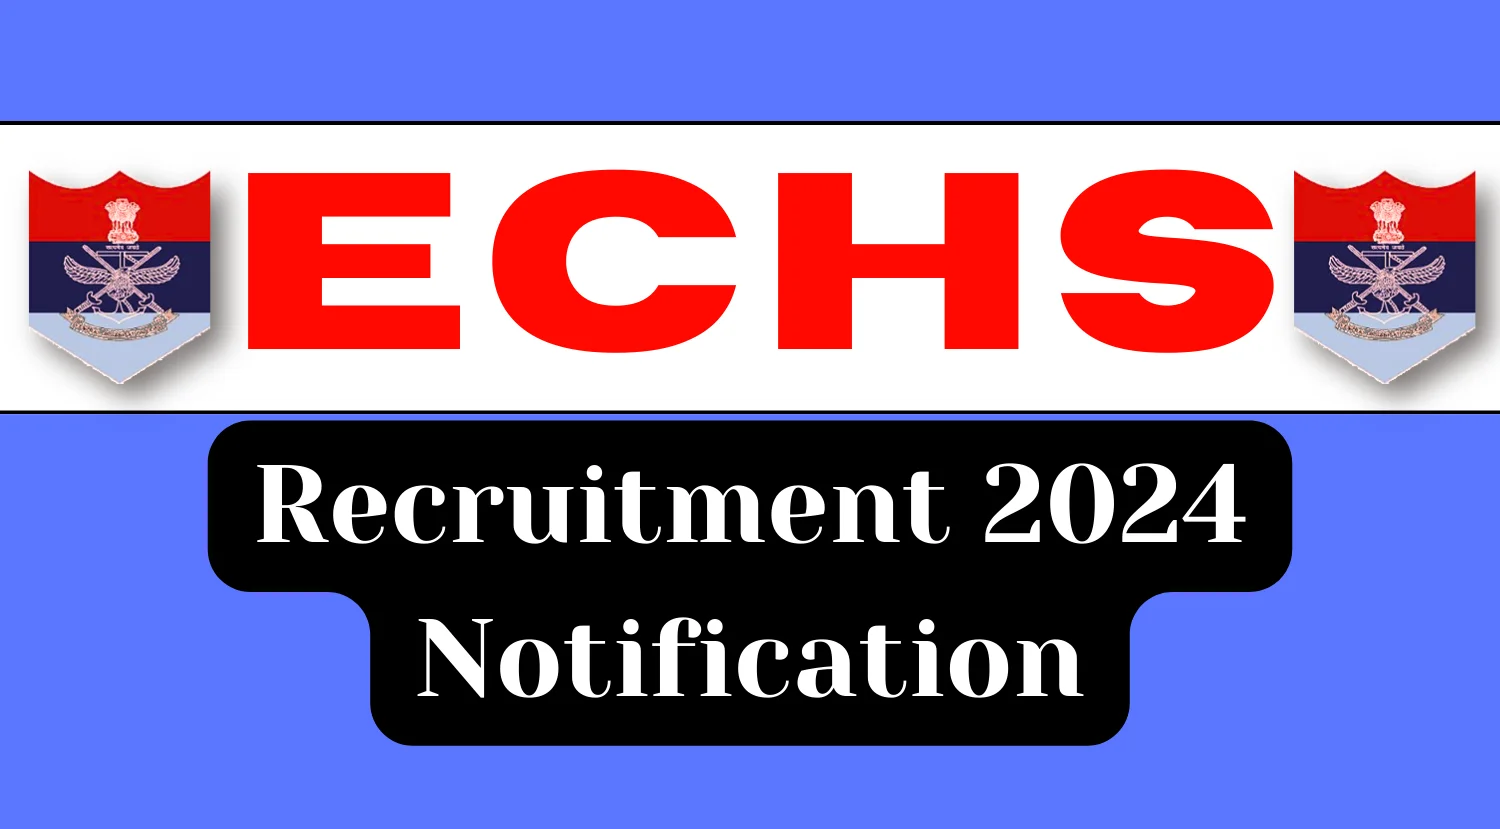 ECHS Recruitment 2024 Notification